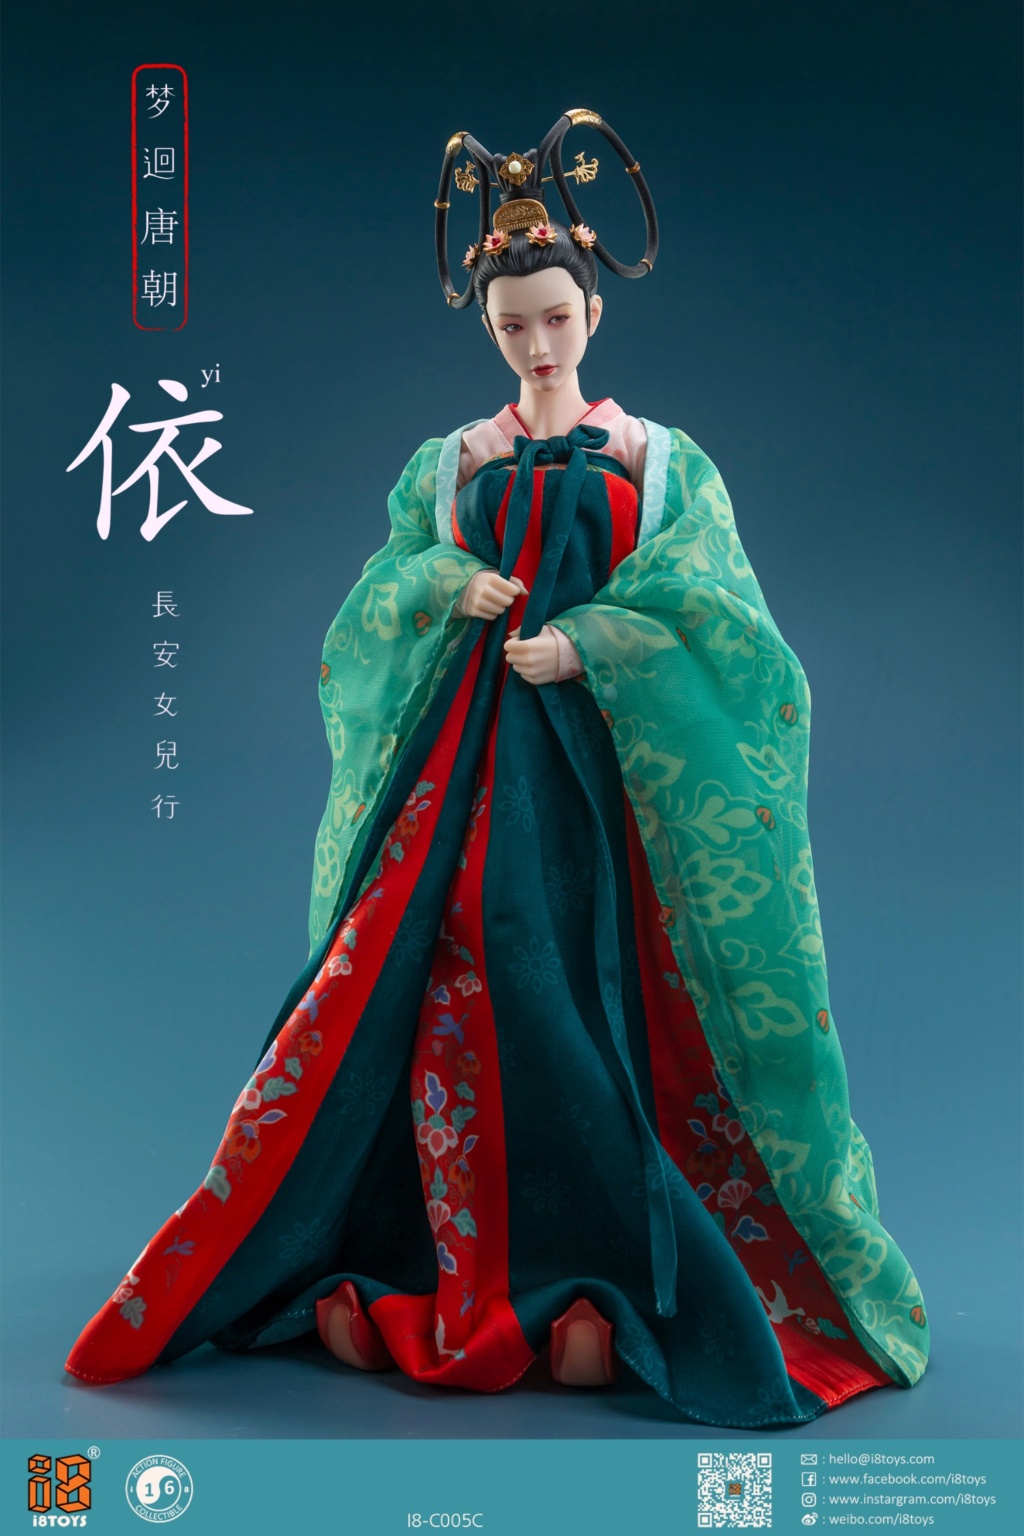 i8toys - NEW PRODUCT: I8Toys: I8-C005 1/6 Scale Han Chinese Clothing sets 11450610